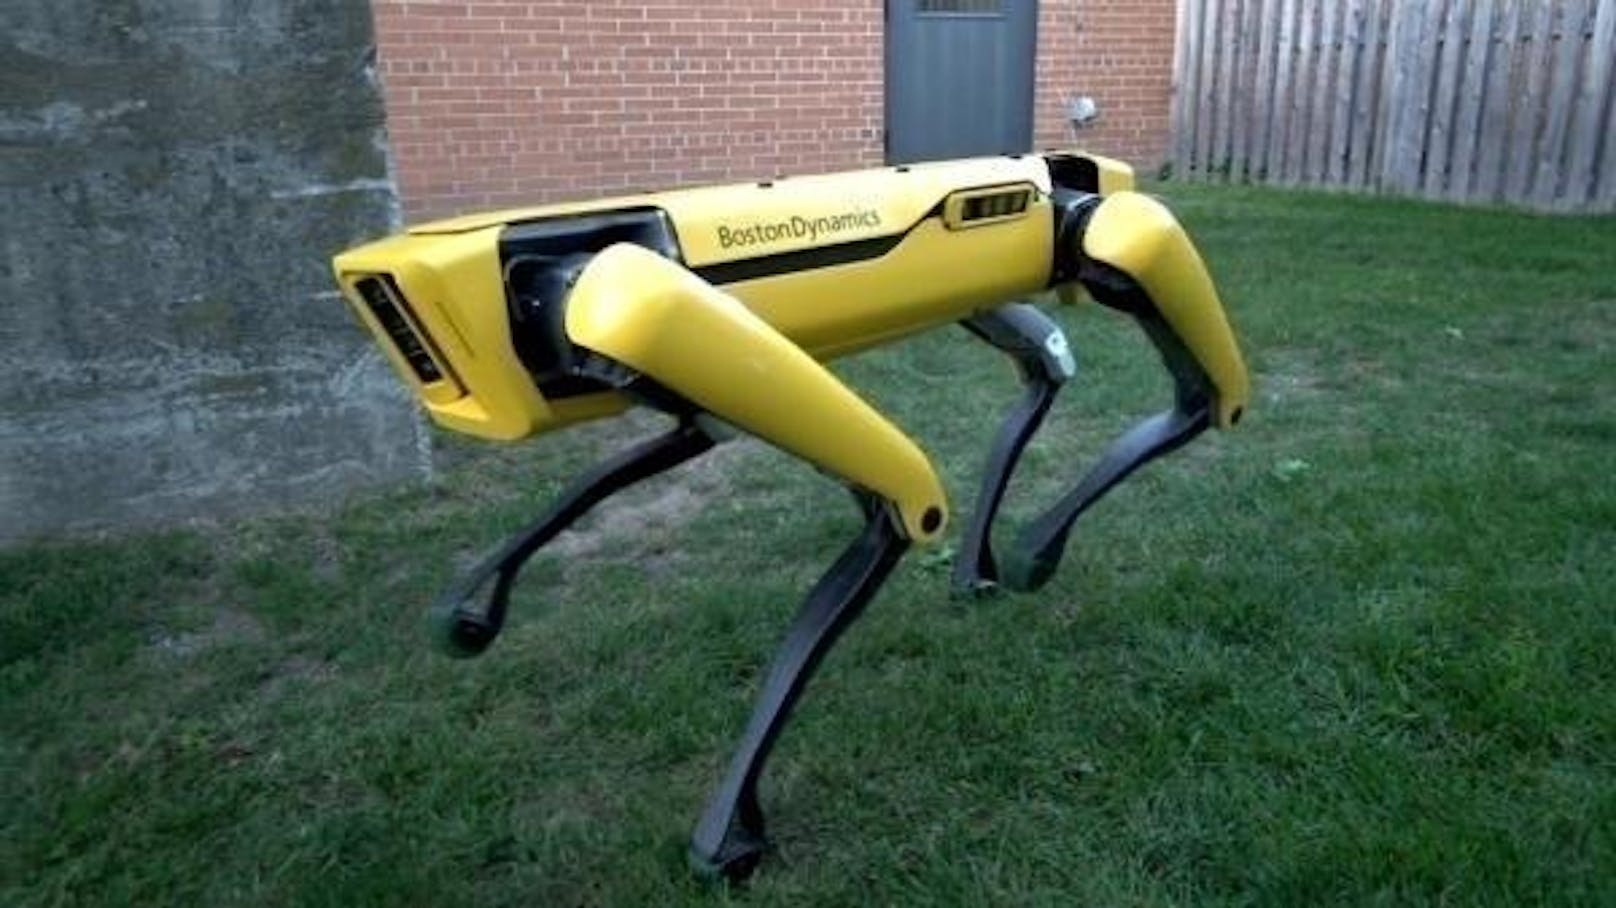 Boston Dynamics hat bekannt gegeben, dass ihr Roboterhund, der "SpotMini", ab 2019 auf den Markt kommen soll. Wie Firmengründer Marc Raibert auf einer Veranstaltung von TechCrunch bestätigte, befinde man sich bereits in der Vorproduktion. Wie viel ein Exemplar kosten soll, ist noch nicht bekannt. Das amerikanische Robotik-Unternehmen hat den hundeähnlichen Roboter gegen Ende 2017 vorgestellt. Der "SpotMini" wiege knapp 30 Kilogramm und sei der leiseste Roboter, den Boston Dynamics gebaut habe.